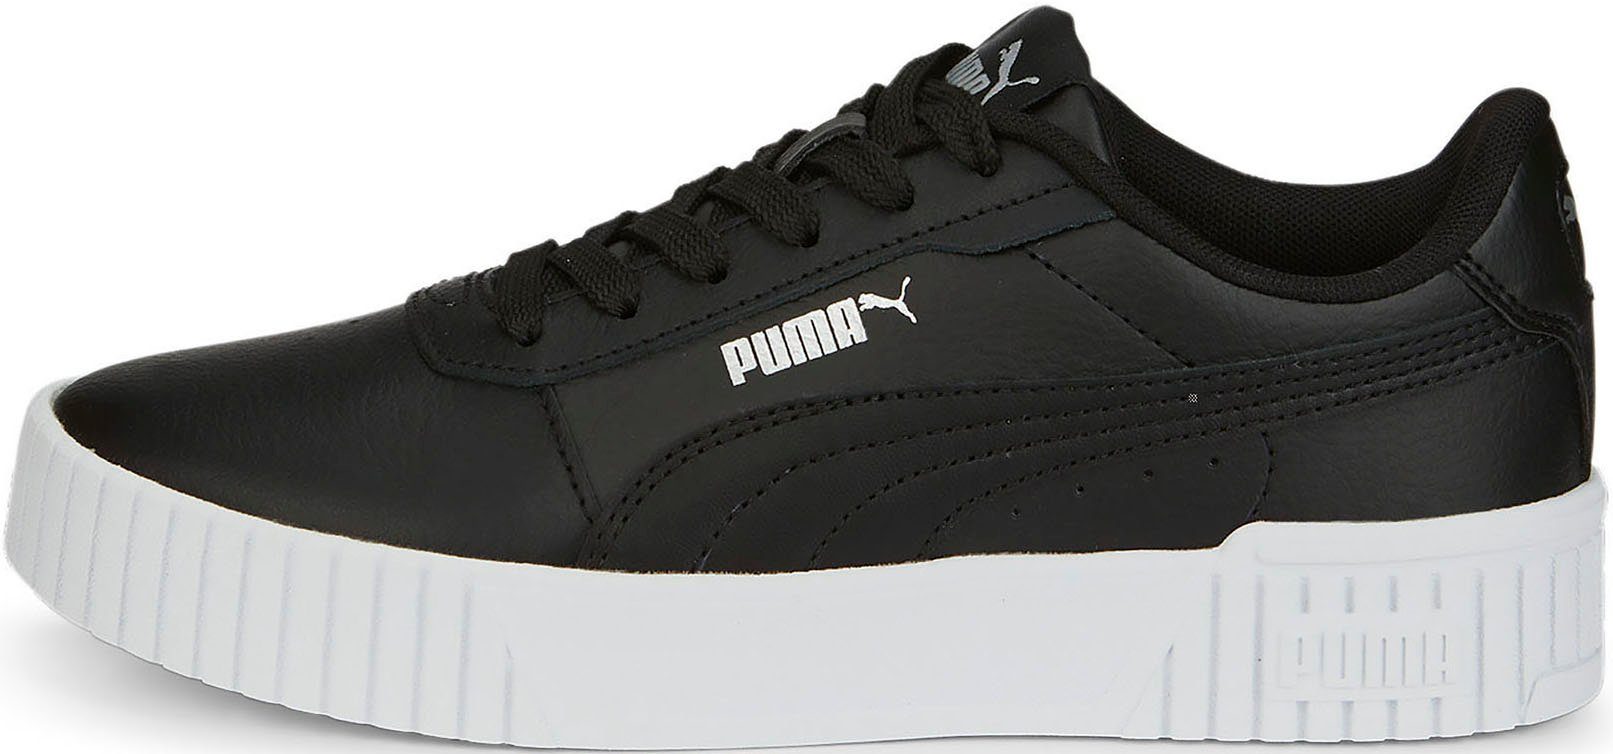 CARINA Sneaker Jugendliche Puma 2.0 Black-Puma Black-Puma PUMA für JR Silver